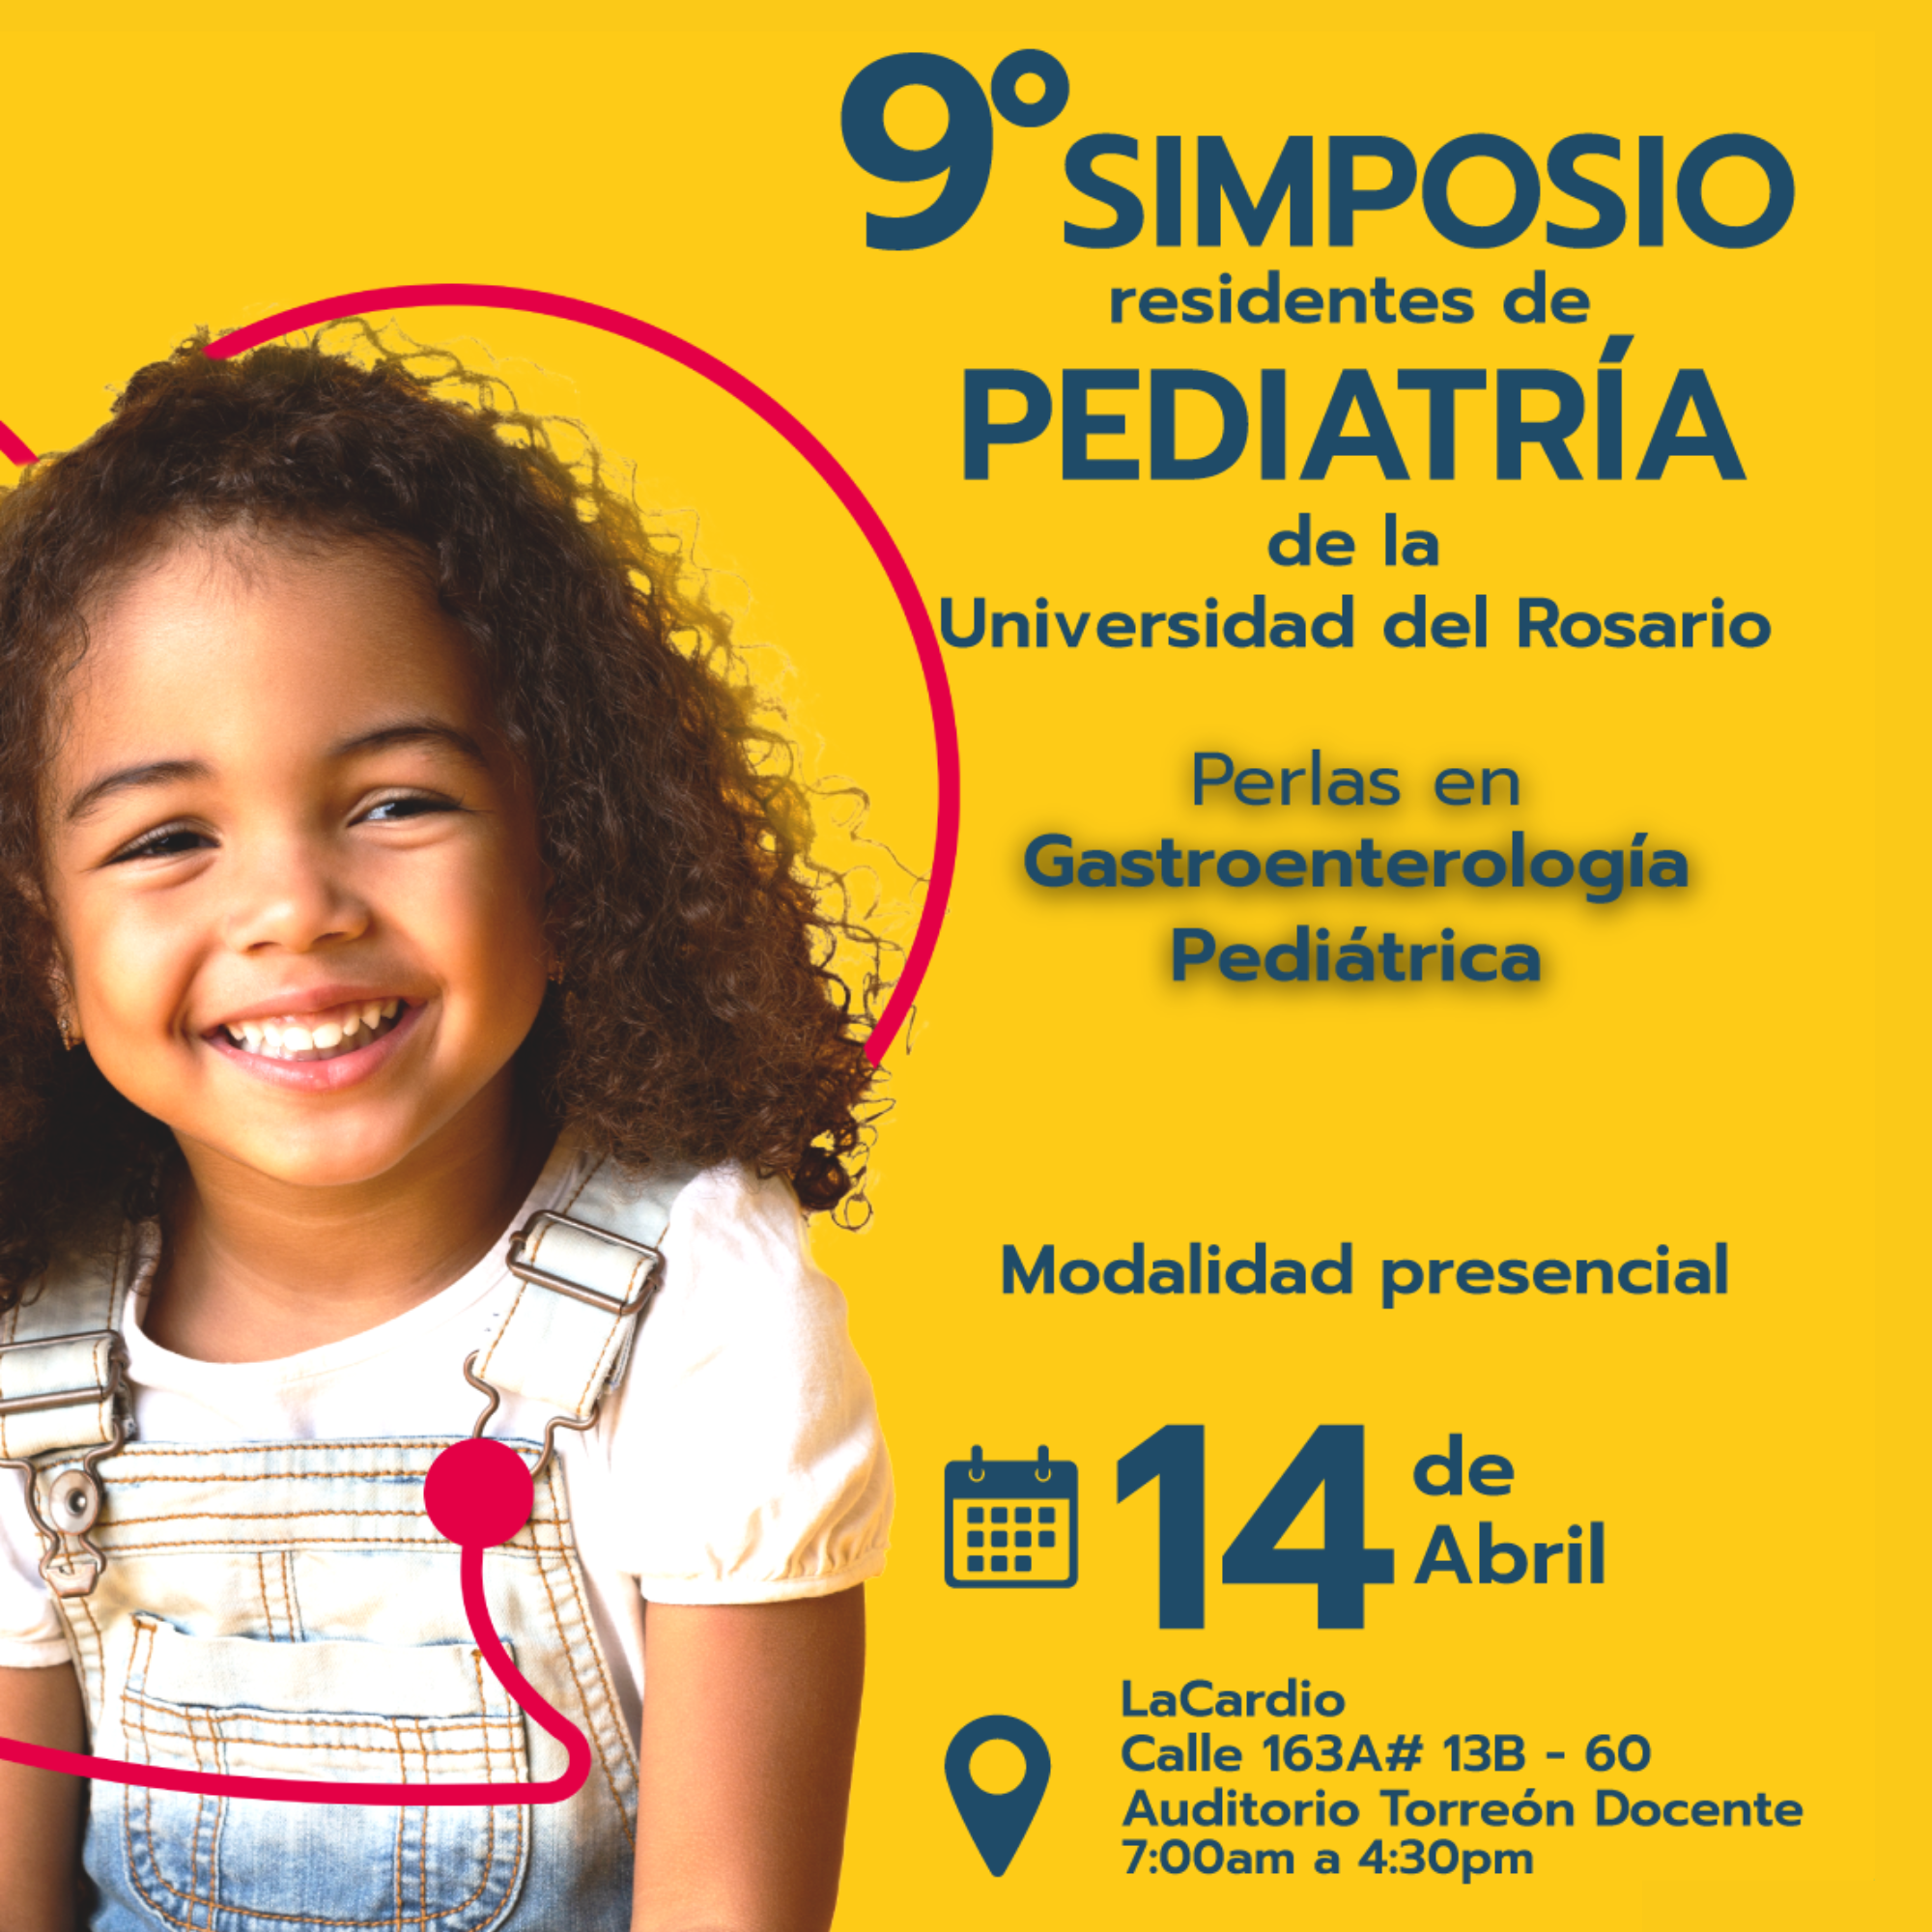 9° Simposio Residentes de Pediatría de la Universidad del Rosario